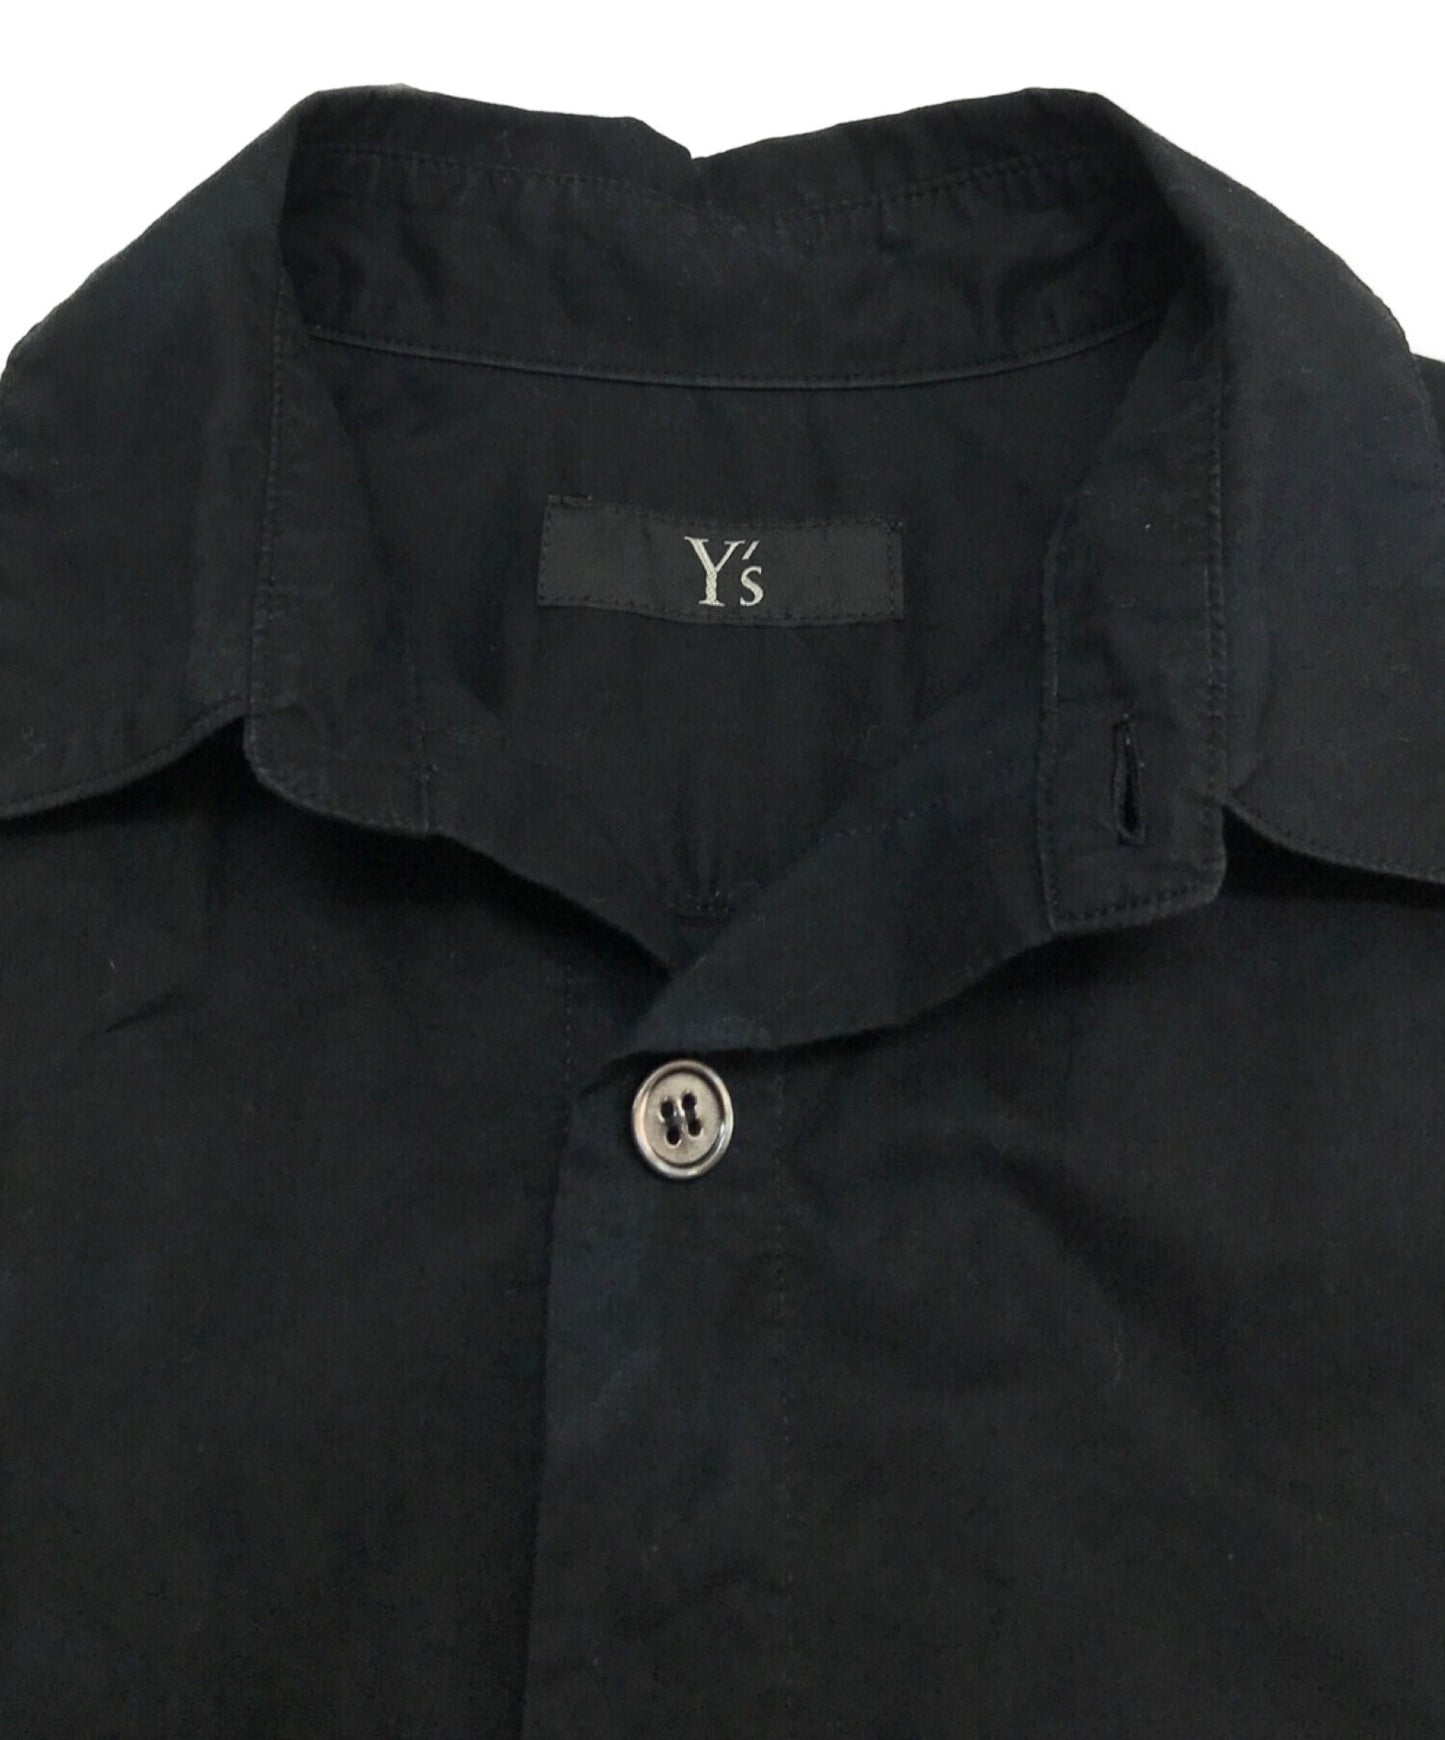 Y的长衬衫 /长袖衬衫 /设计衬衫 /衬衫 /固体衬衫YX-B08-001